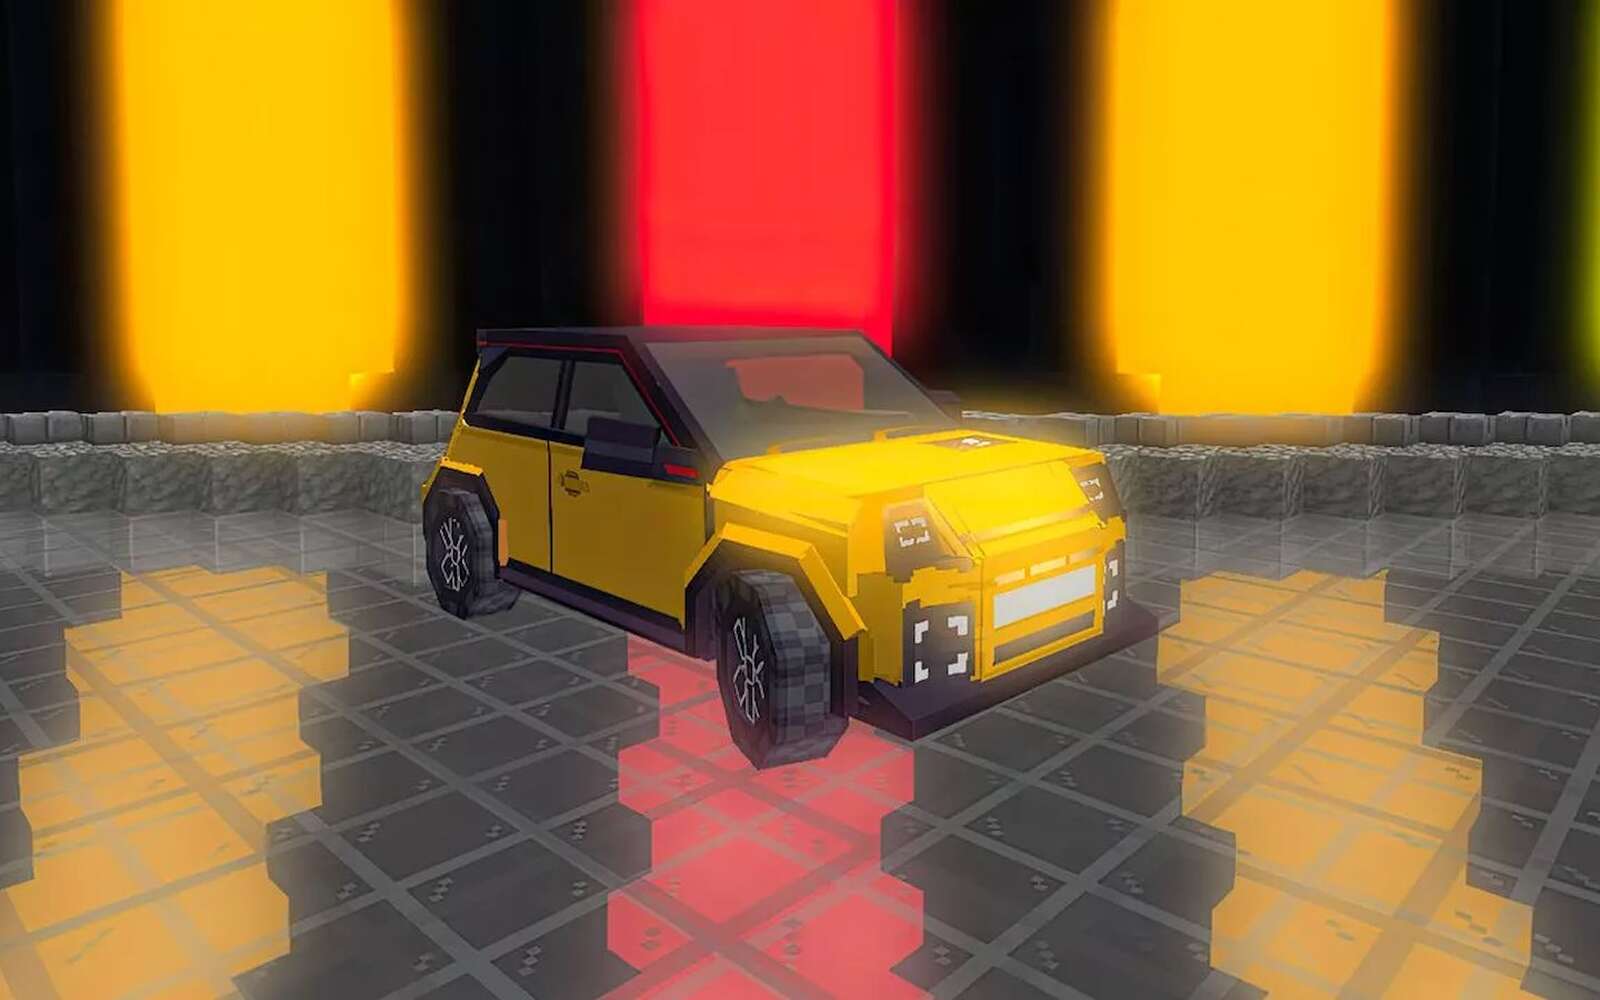 Jouez avec la nouvelle Renault 5 dans ces jeux vidéo